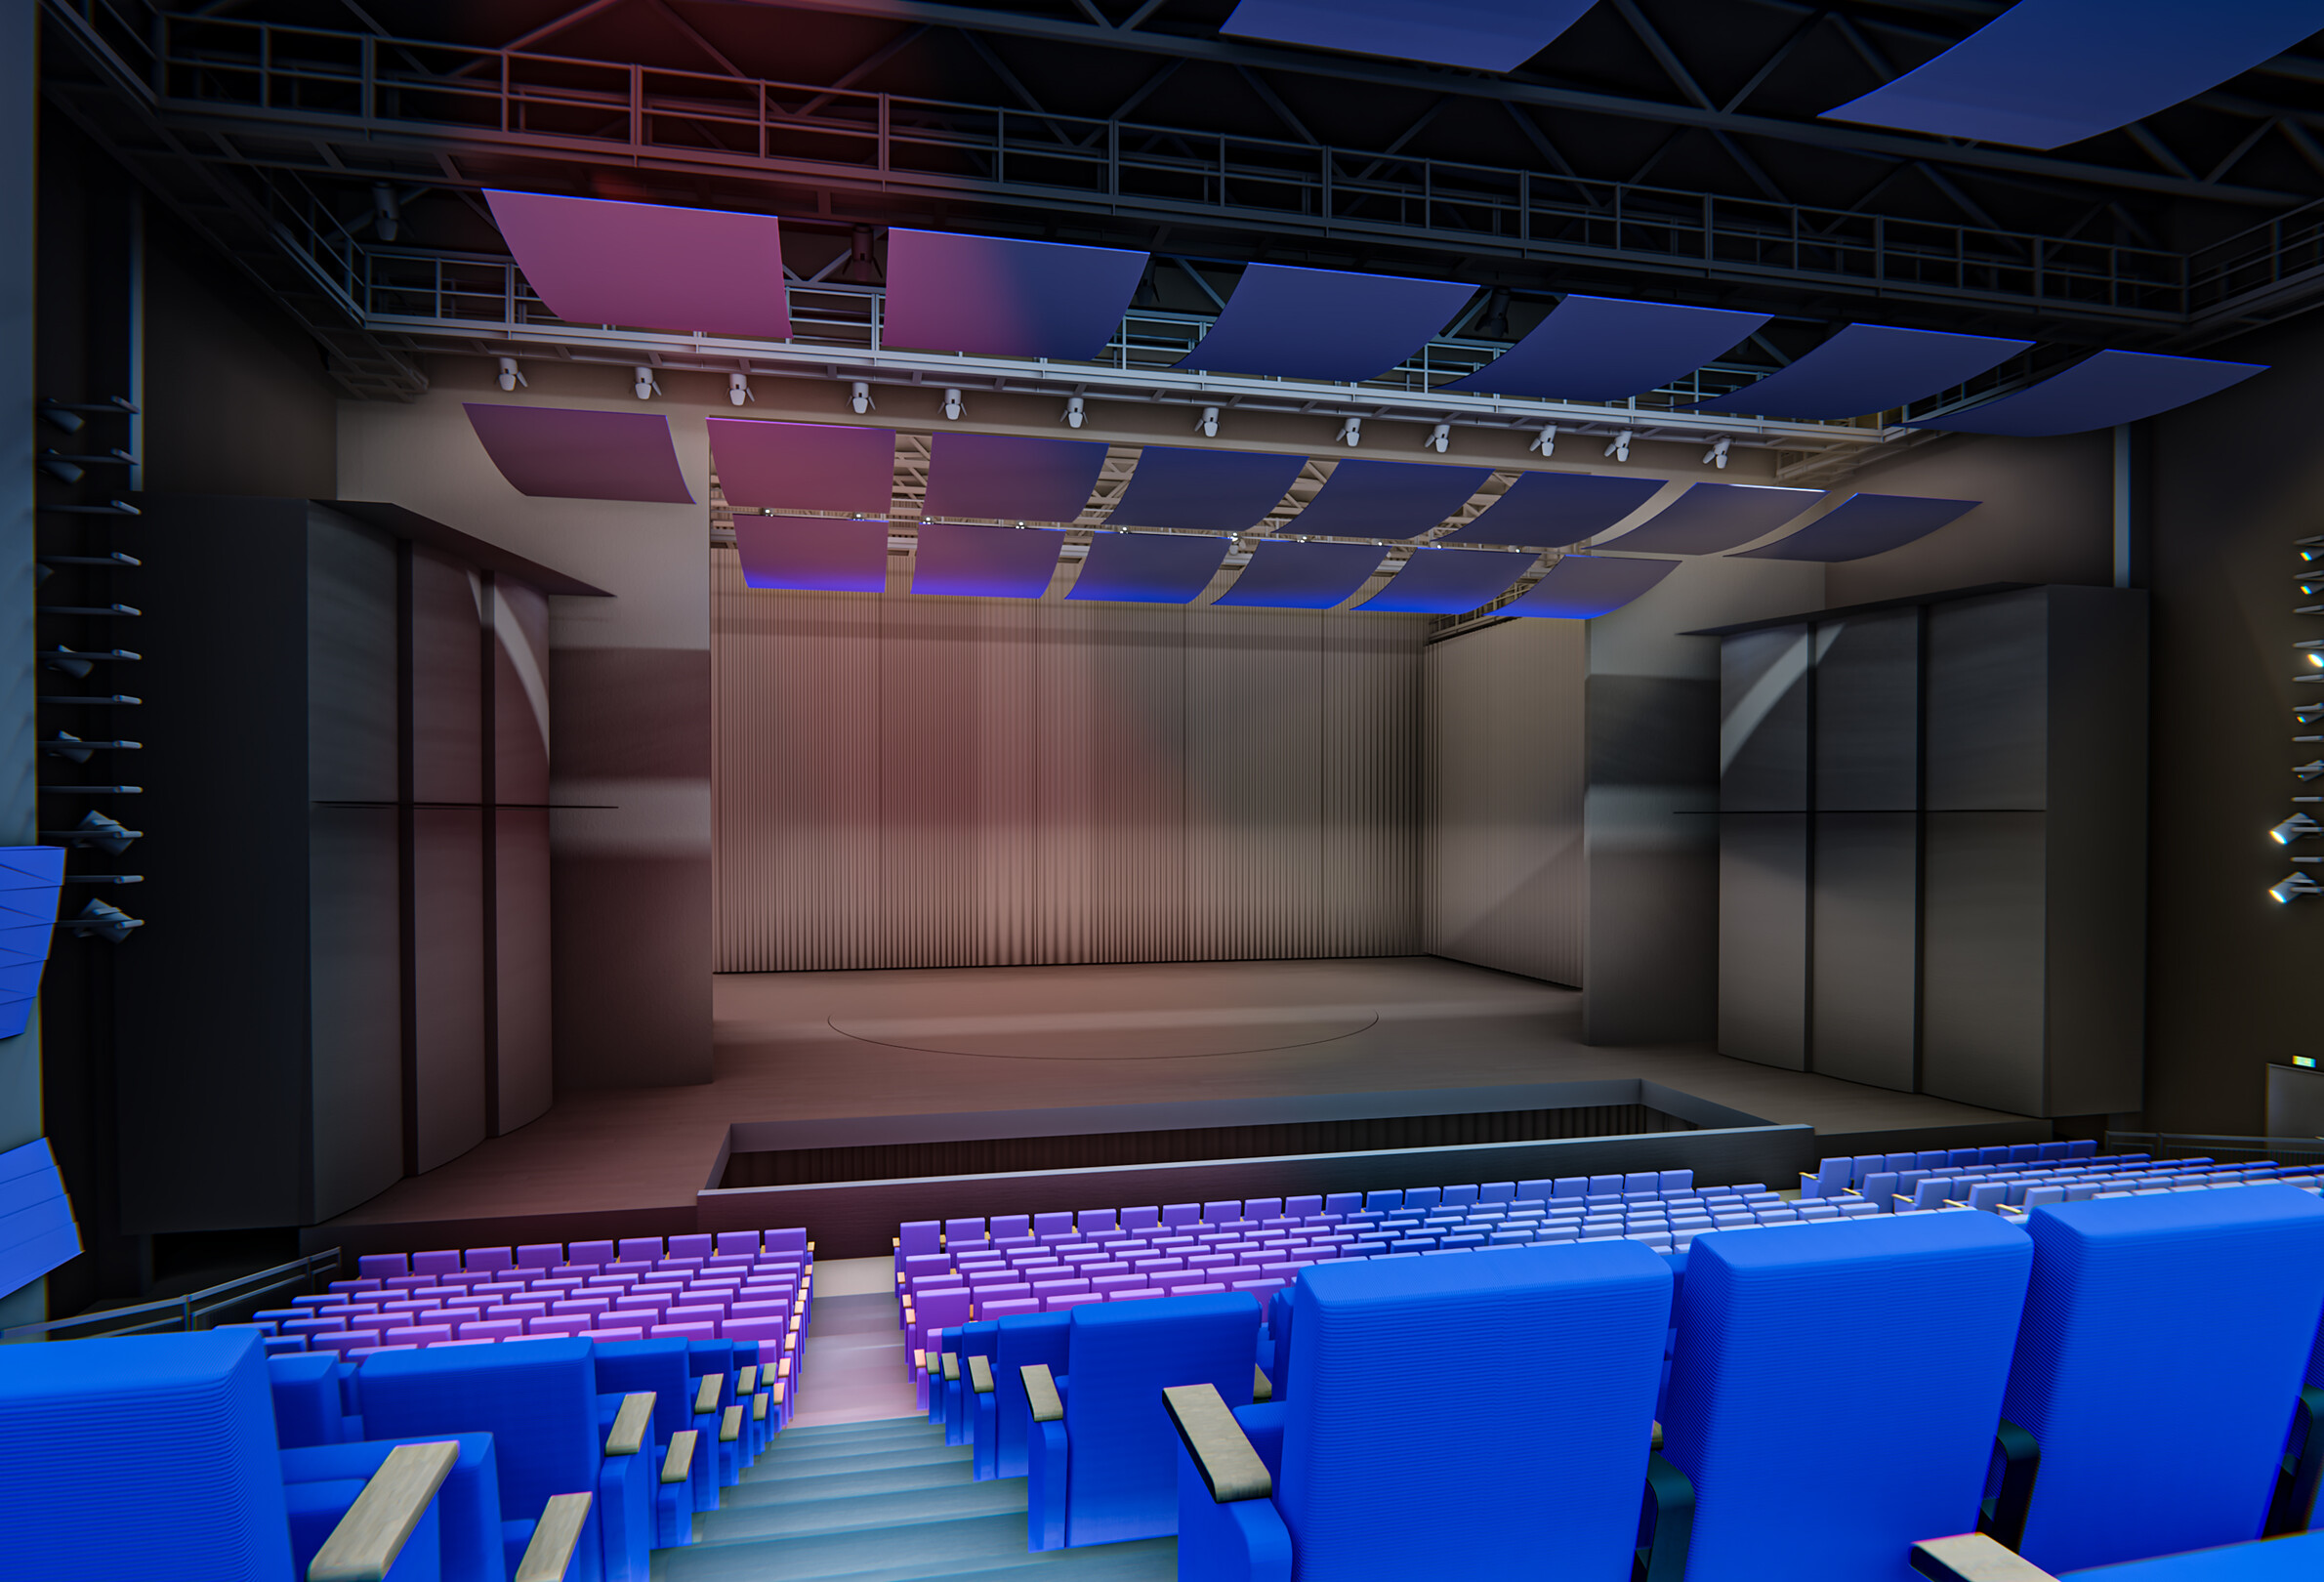 Visualisierung des Zuschauersaals und der Bühne. Der Blick richtet sich auf die Bühne aus den hinteren Zuschauerreihen.